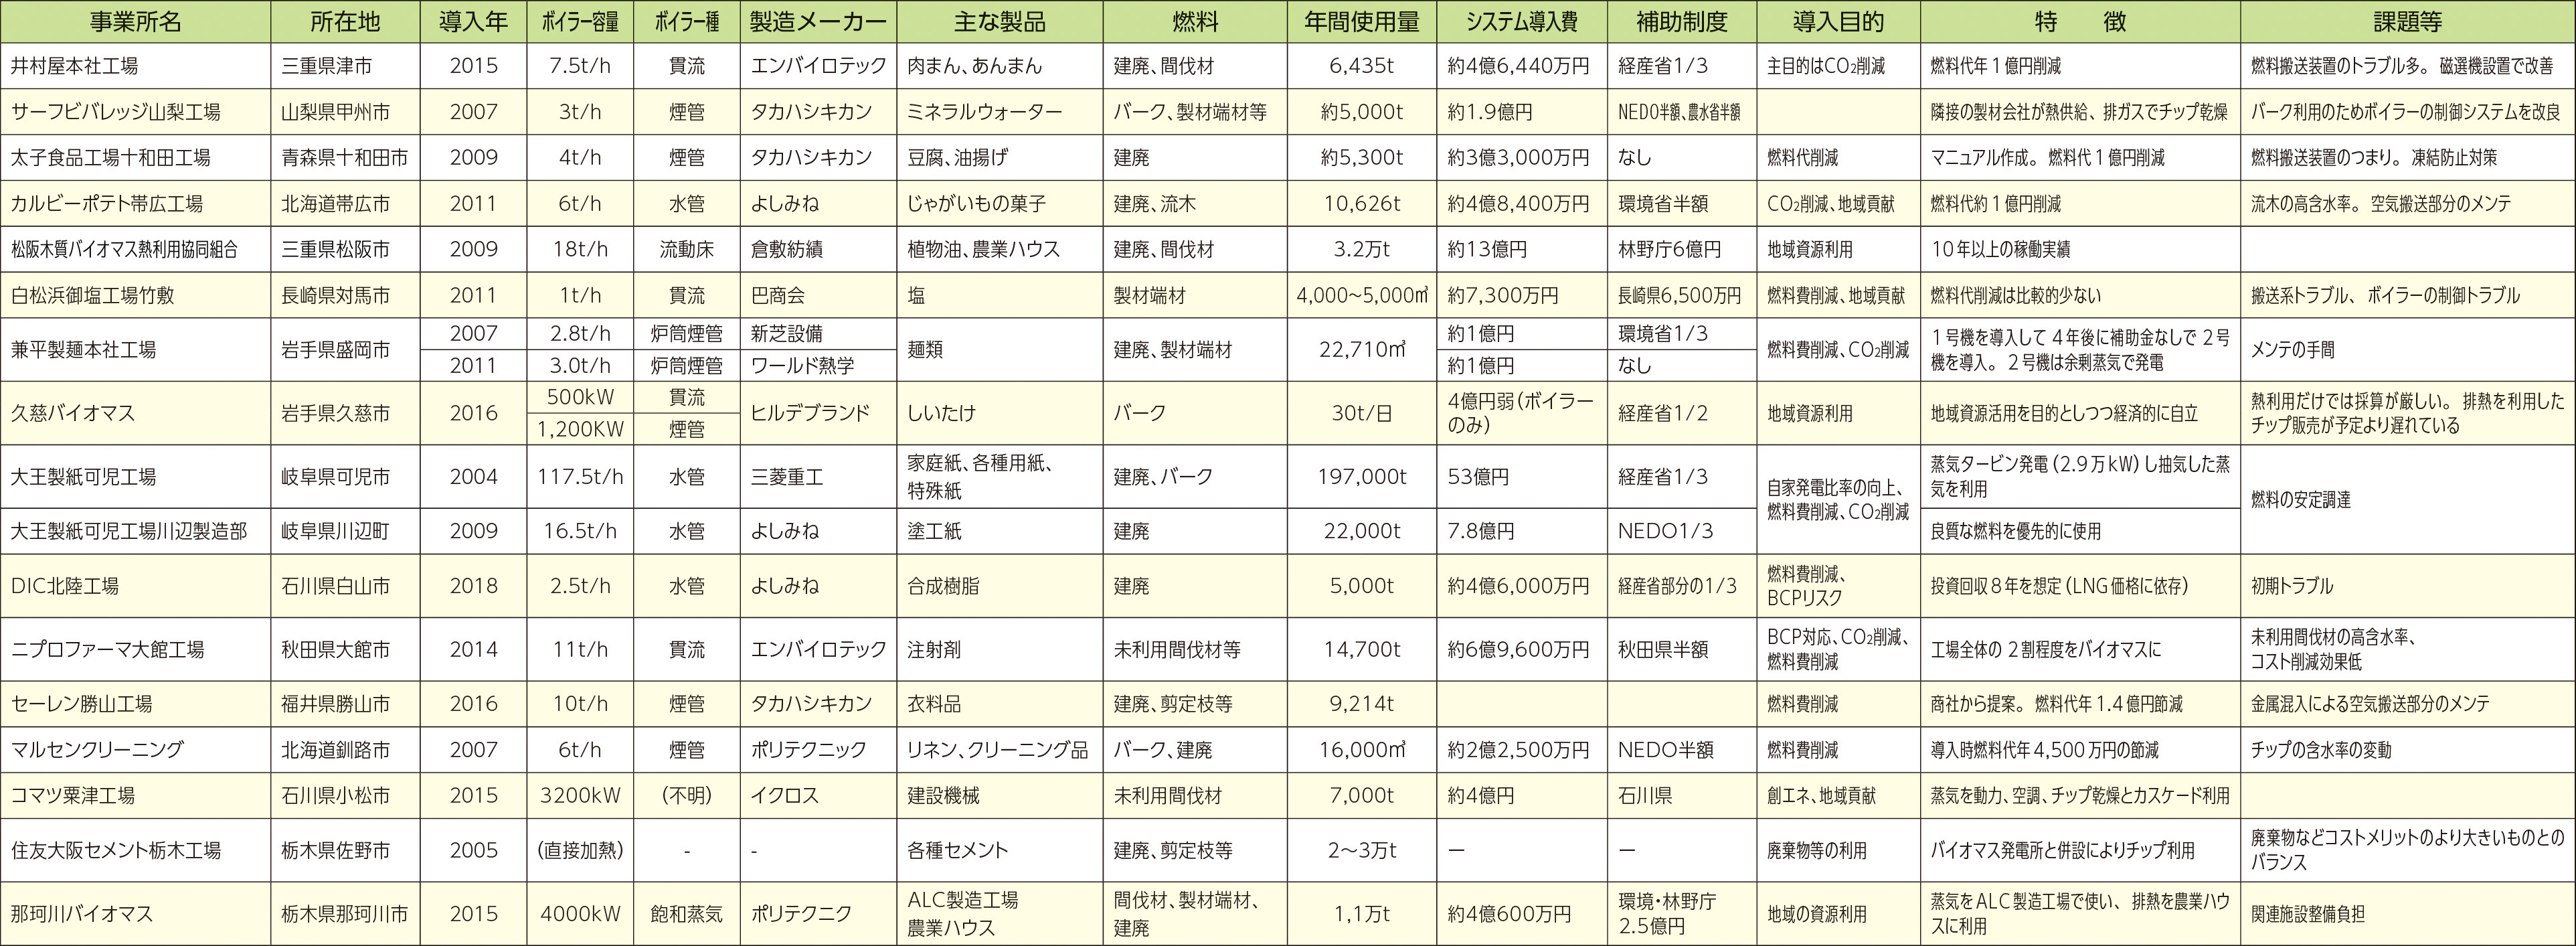 表3：日本で稼働している主な産業用バイオマスボイラーの事例と課題等